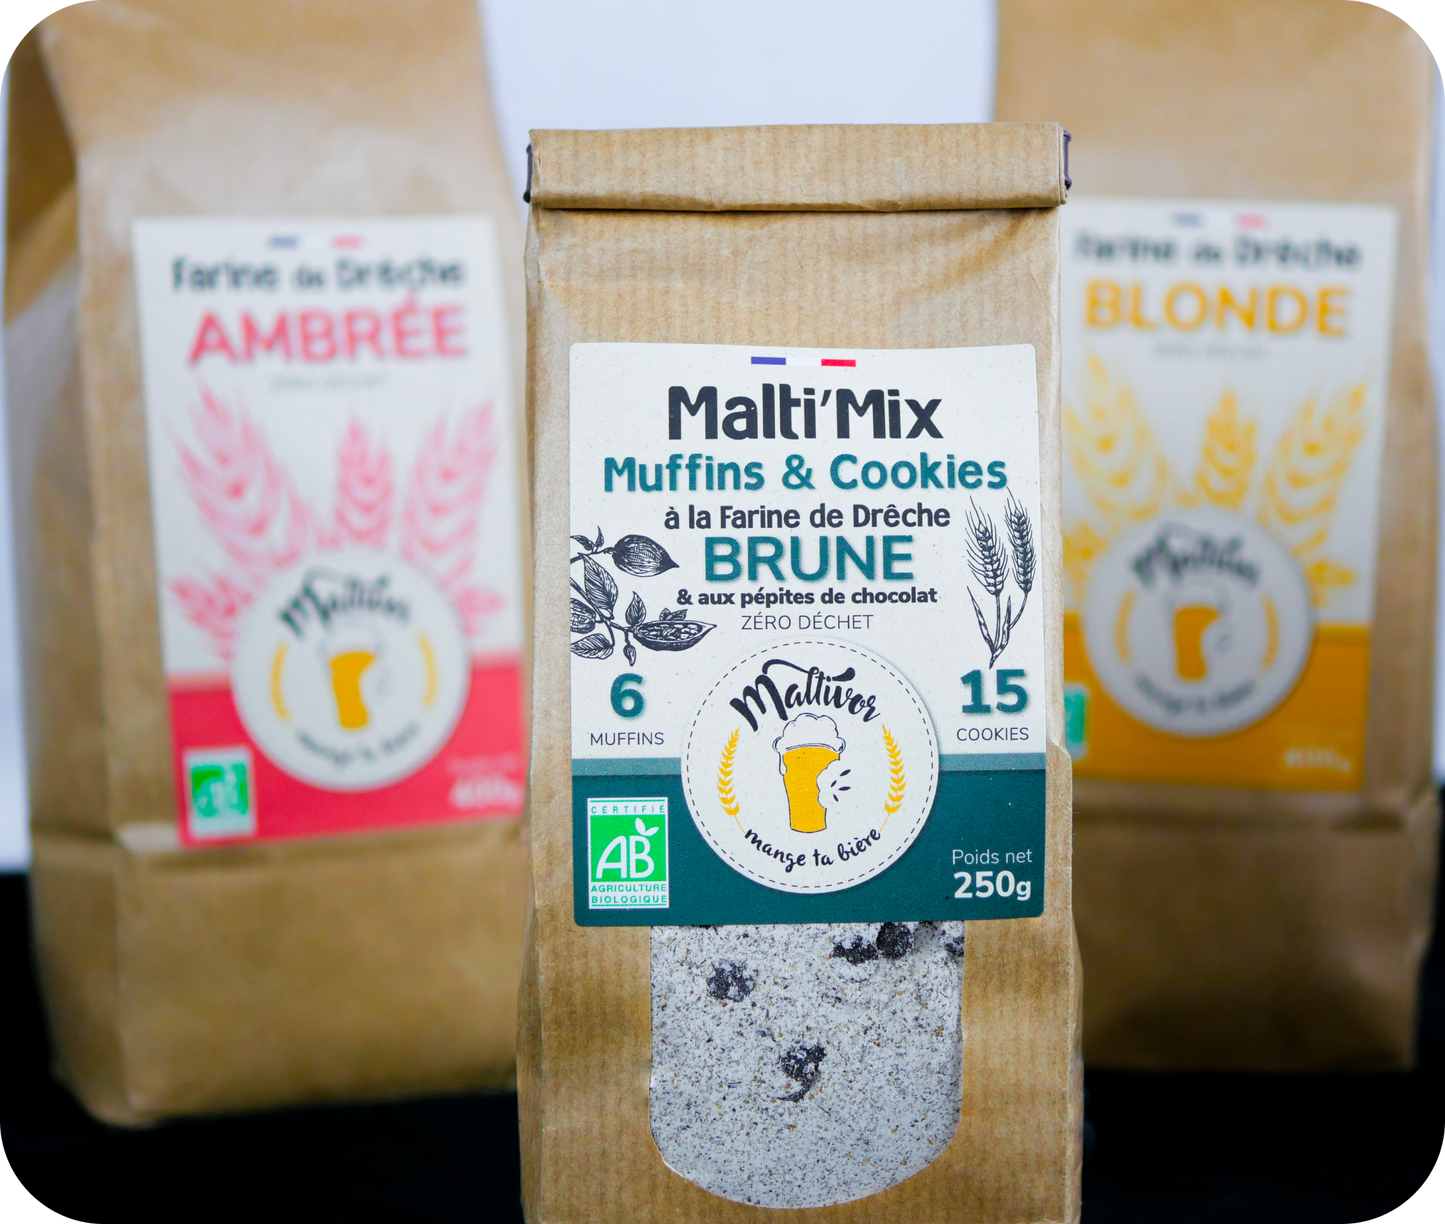 Sachet de Malti’Mix pour Muffins & Cookies Maltivor entouré de sachets de farine de drêche ambrée maltivor et de farine de drêche blonde maltivor